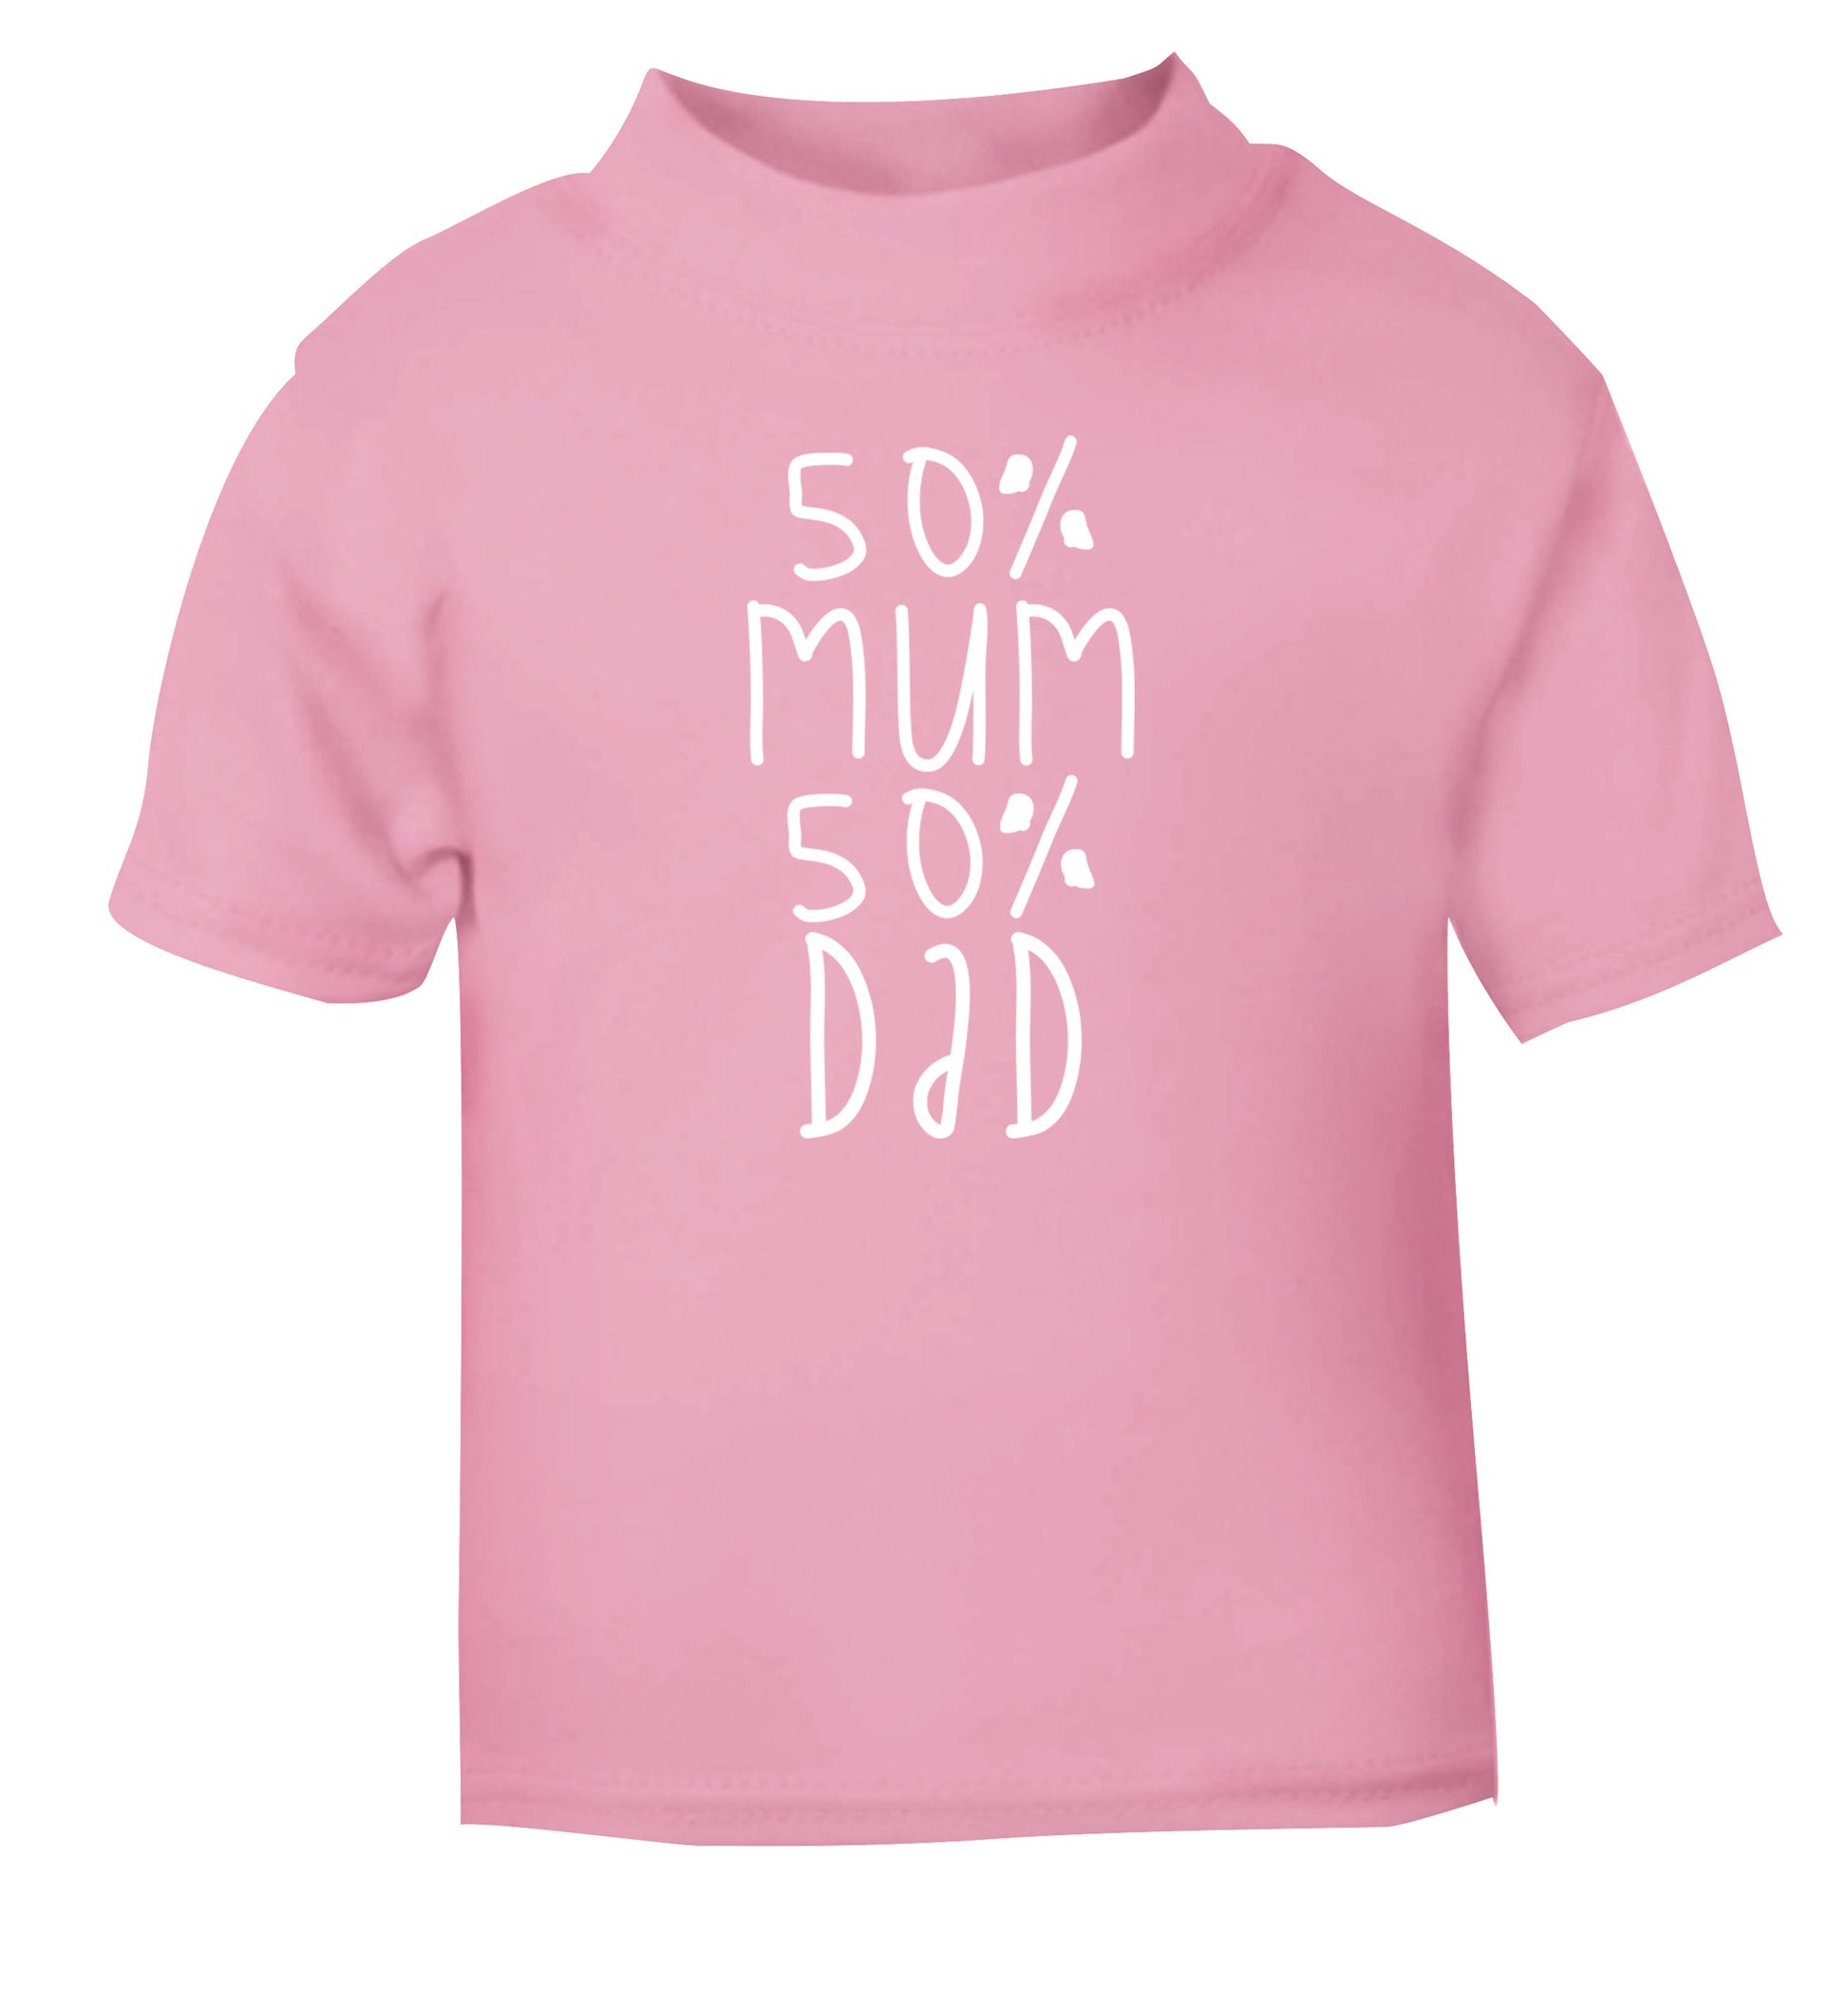 50% mum 50% dad light pink Baby Toddler Tshirt 2 Years